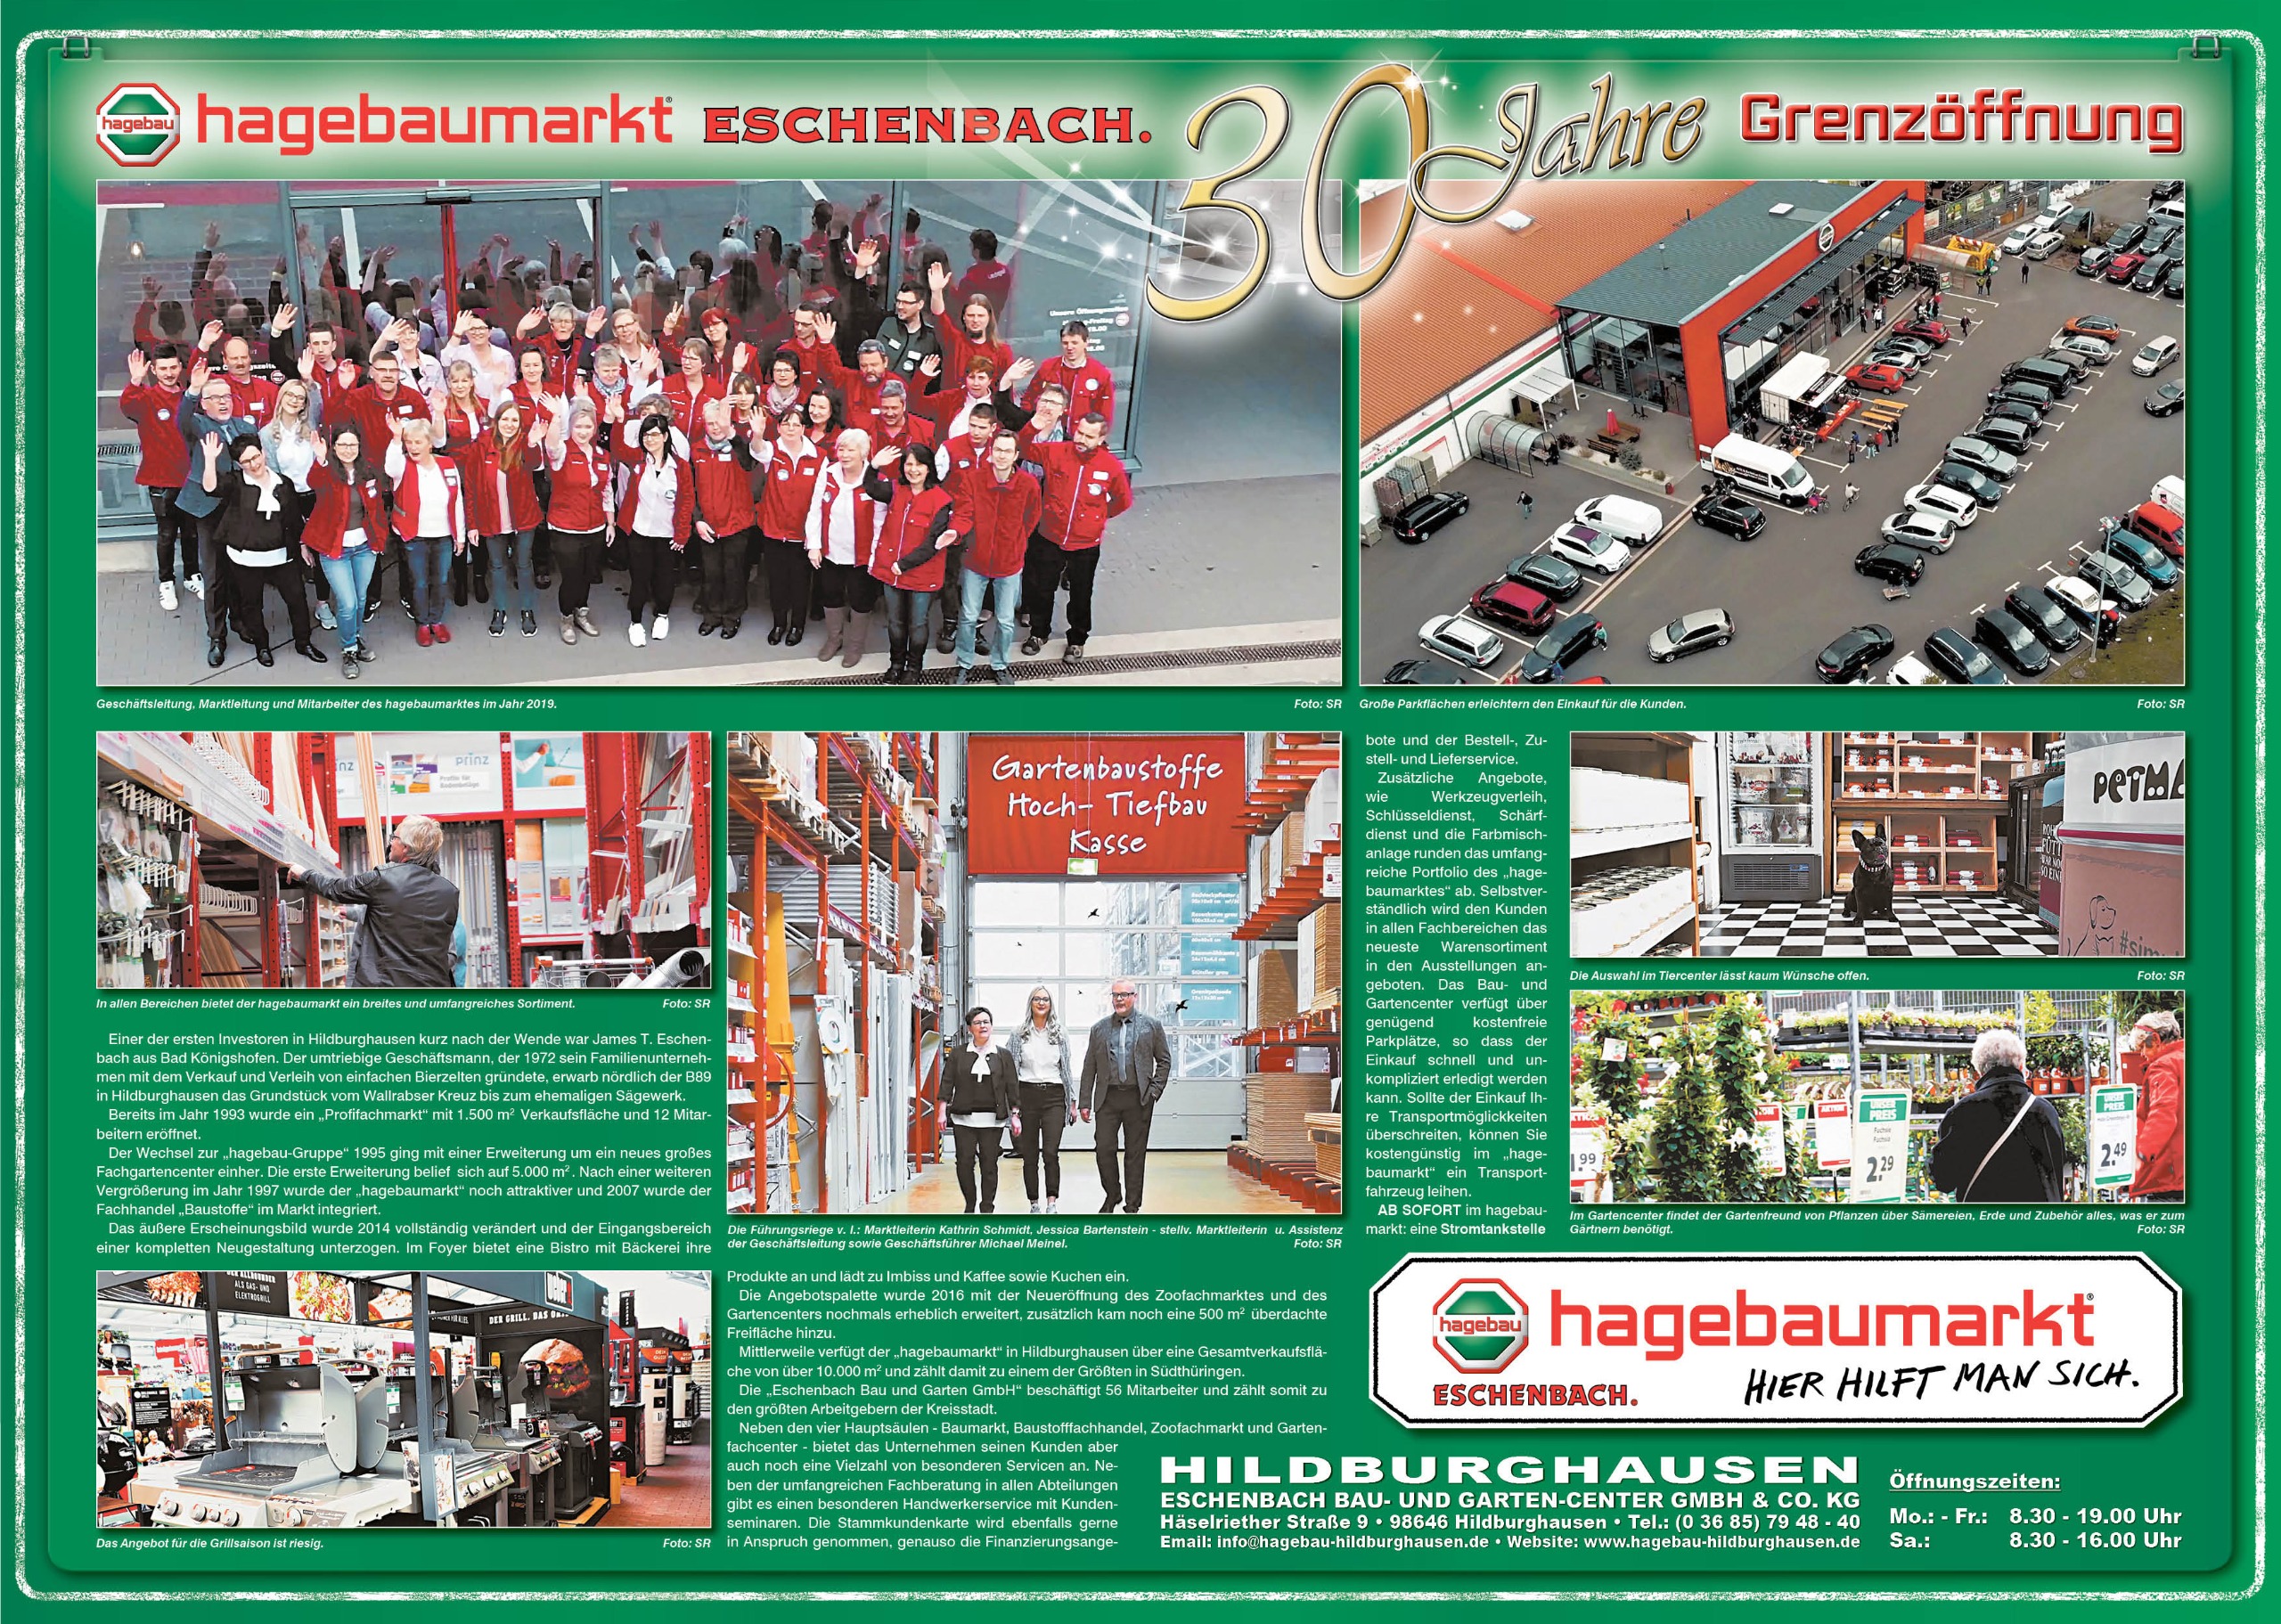 Eschenbach Hagebaumarkt Baustoffhandel Hildburghausen